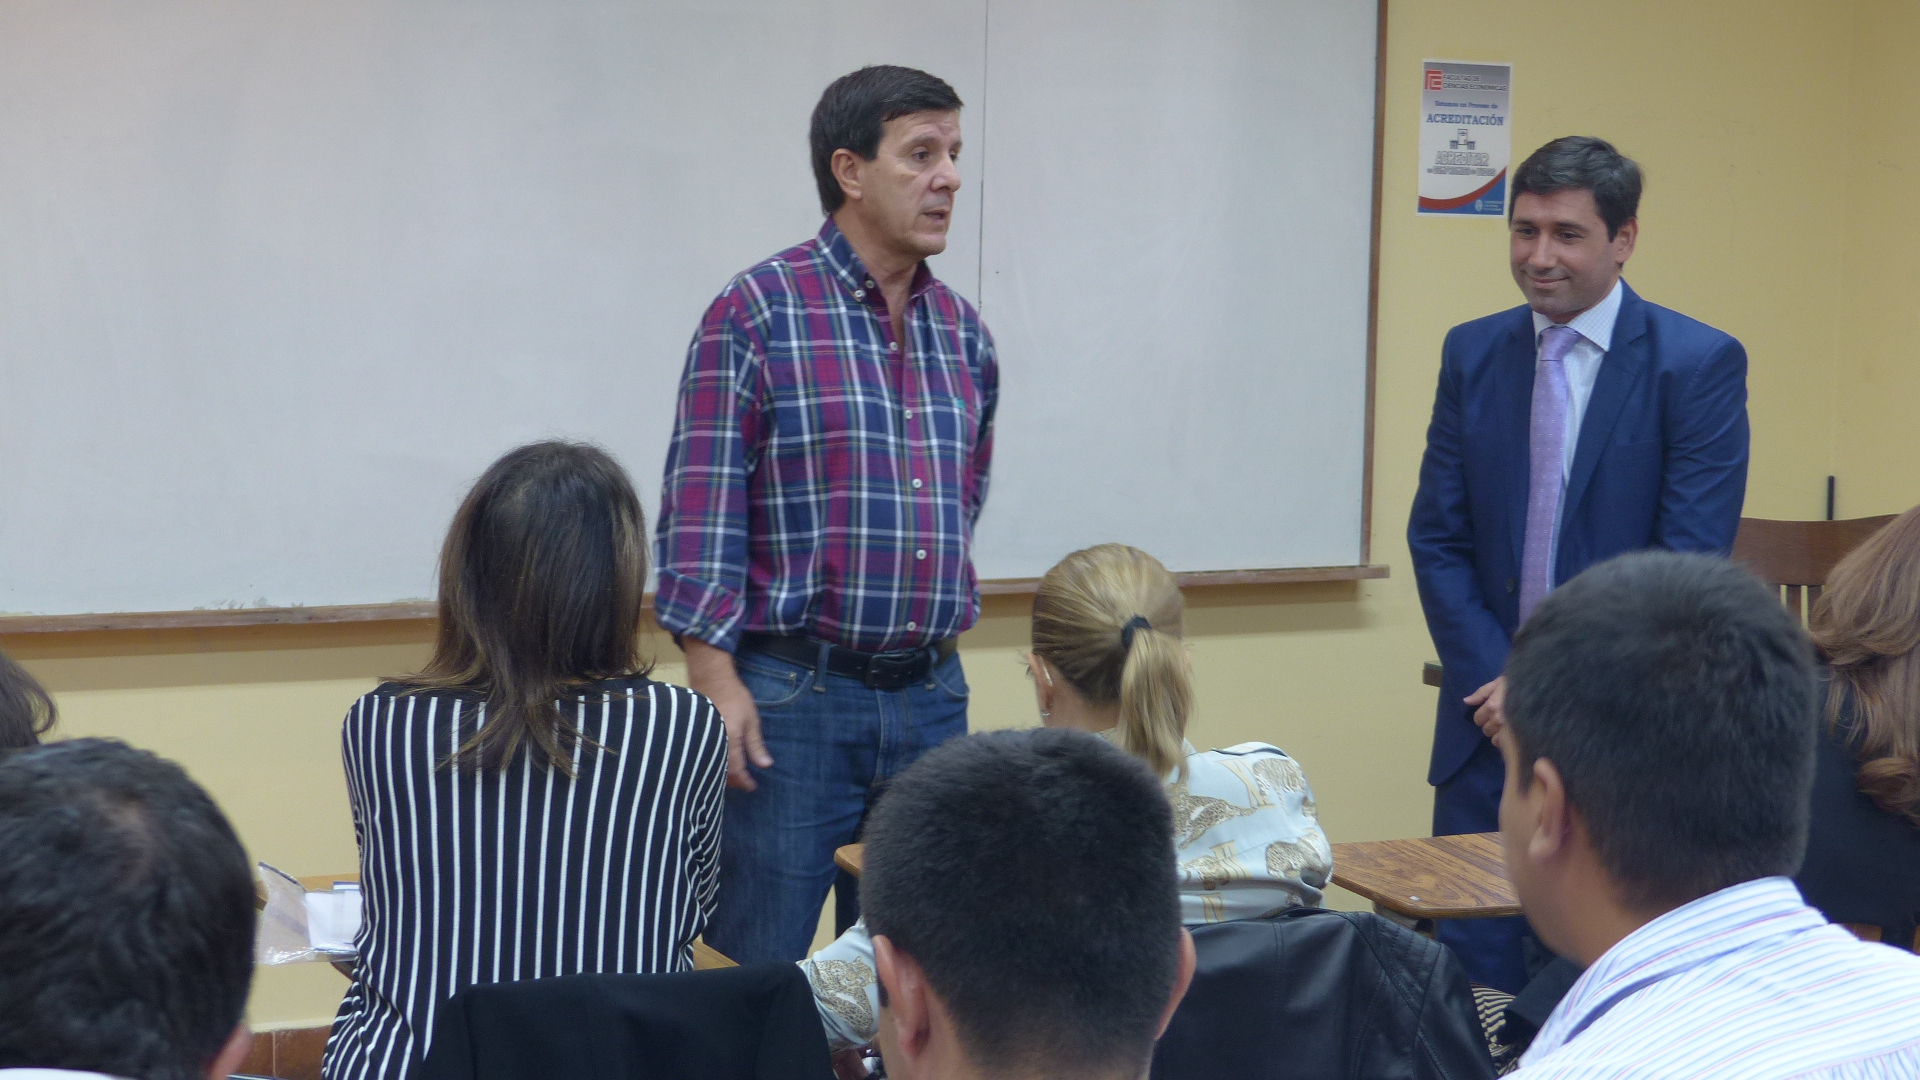 El Dr. Paulo Falcón dio una charla sobre la Universidad Pública argentina  en nuestra Facultad | Facultad de Ciencias Económicas - Universidad  Nacional de Tucumán